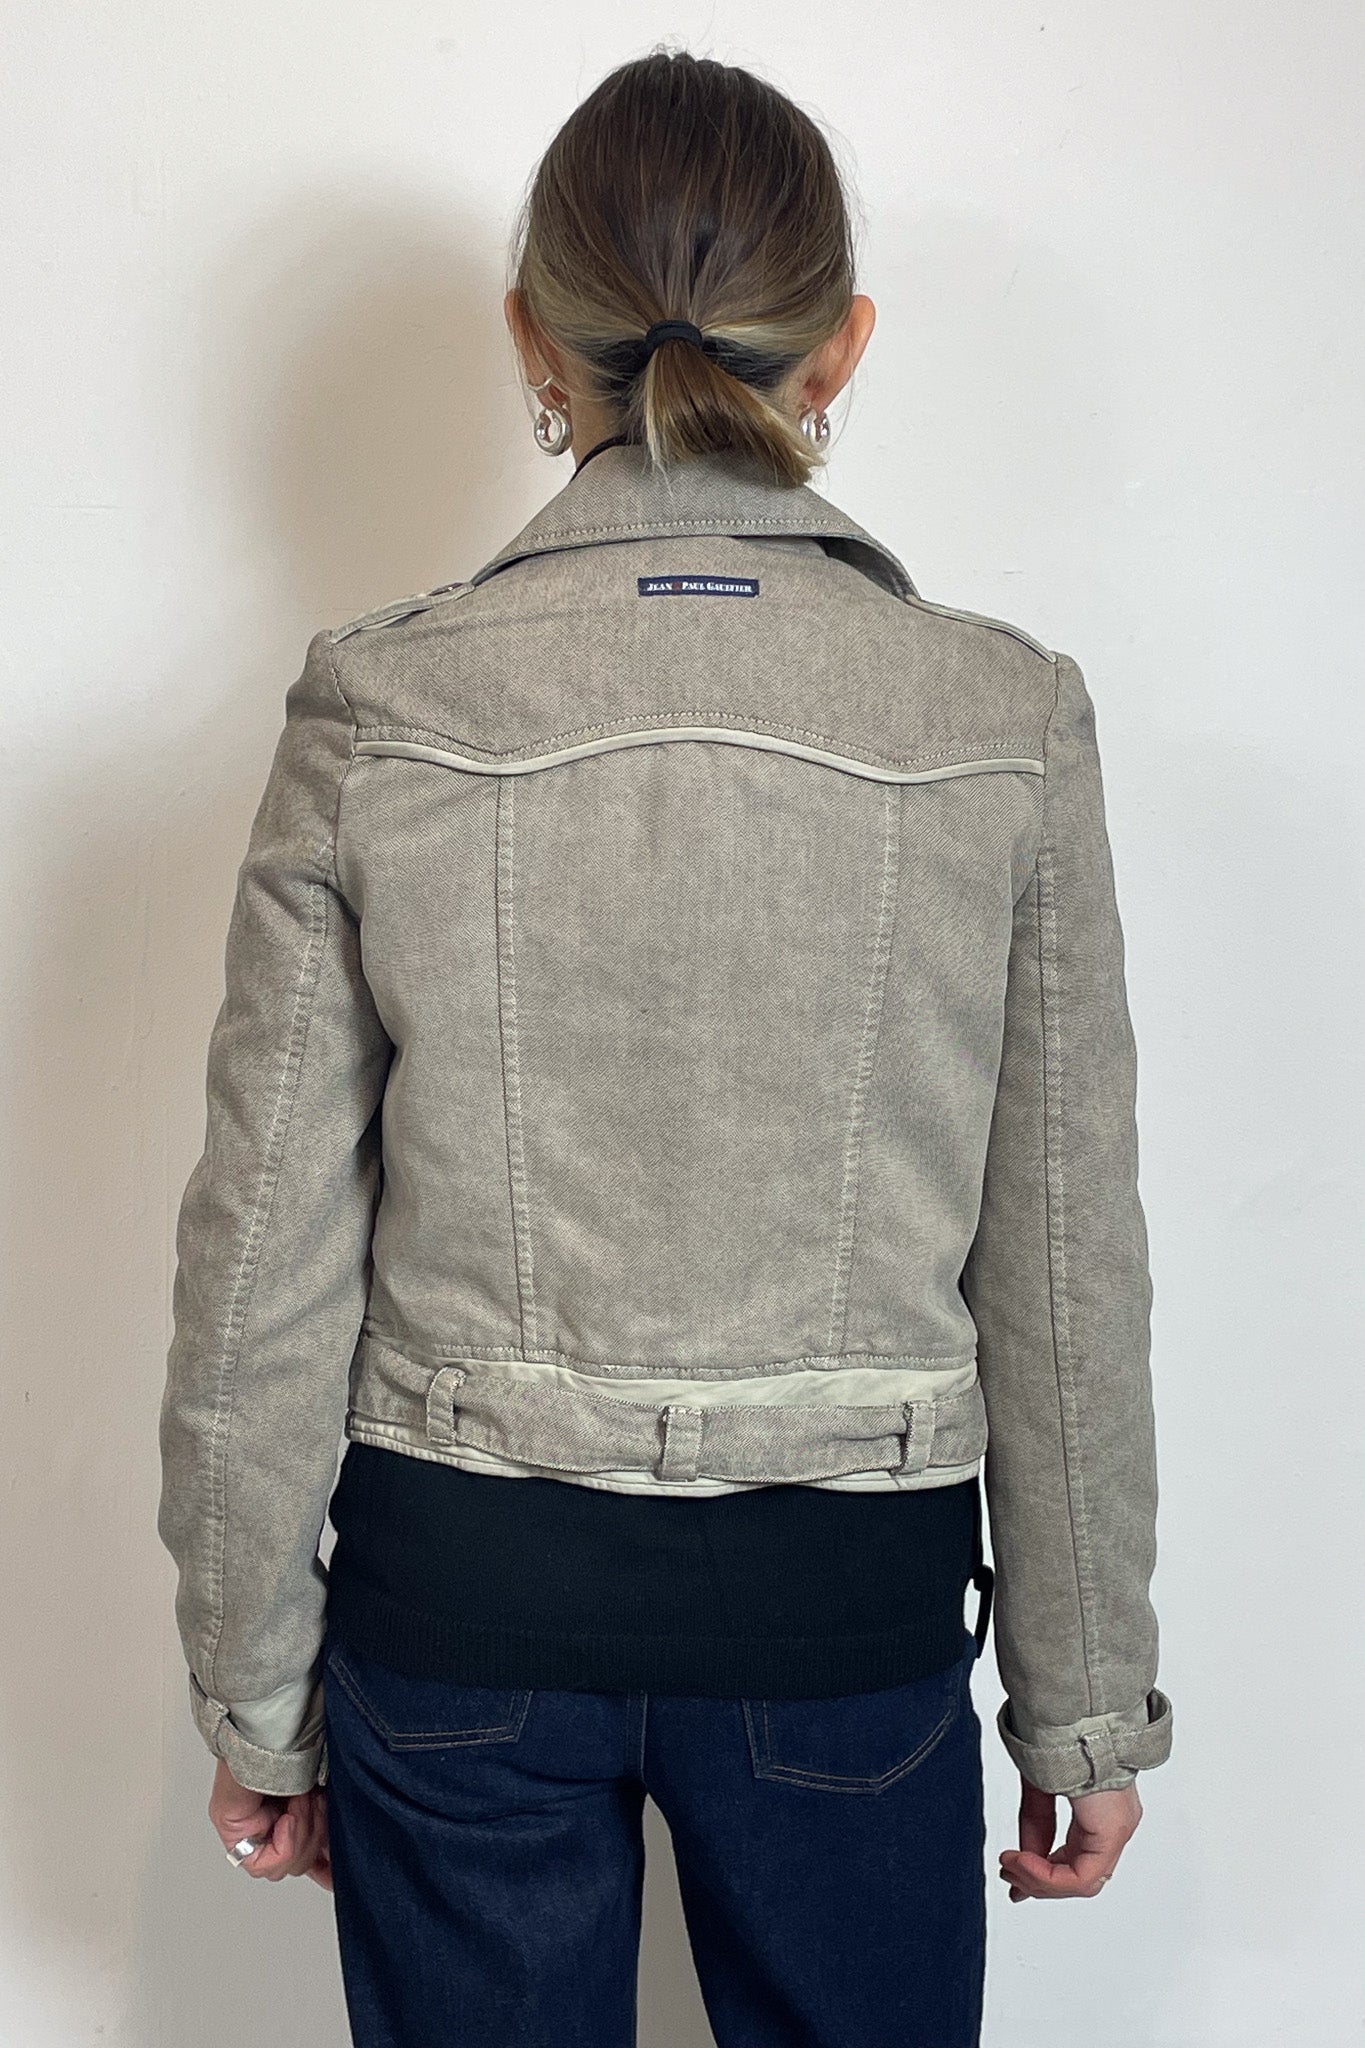 Jean Paul Gaultier Cropped Jacket